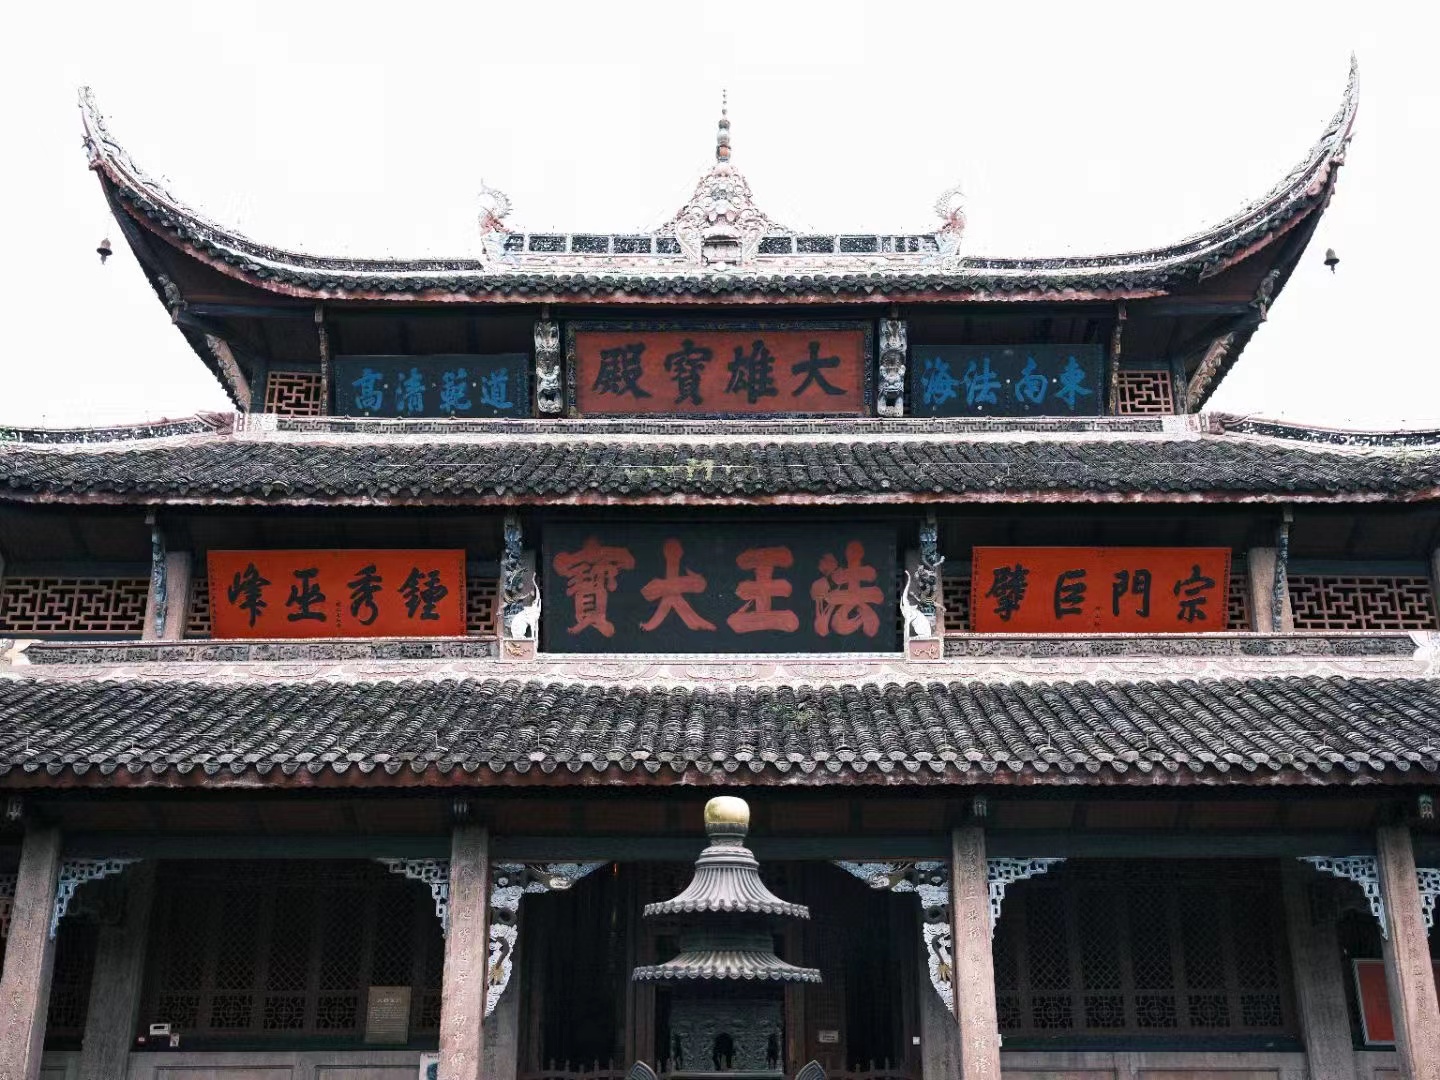 A temple in Tongliang, Chongqing.